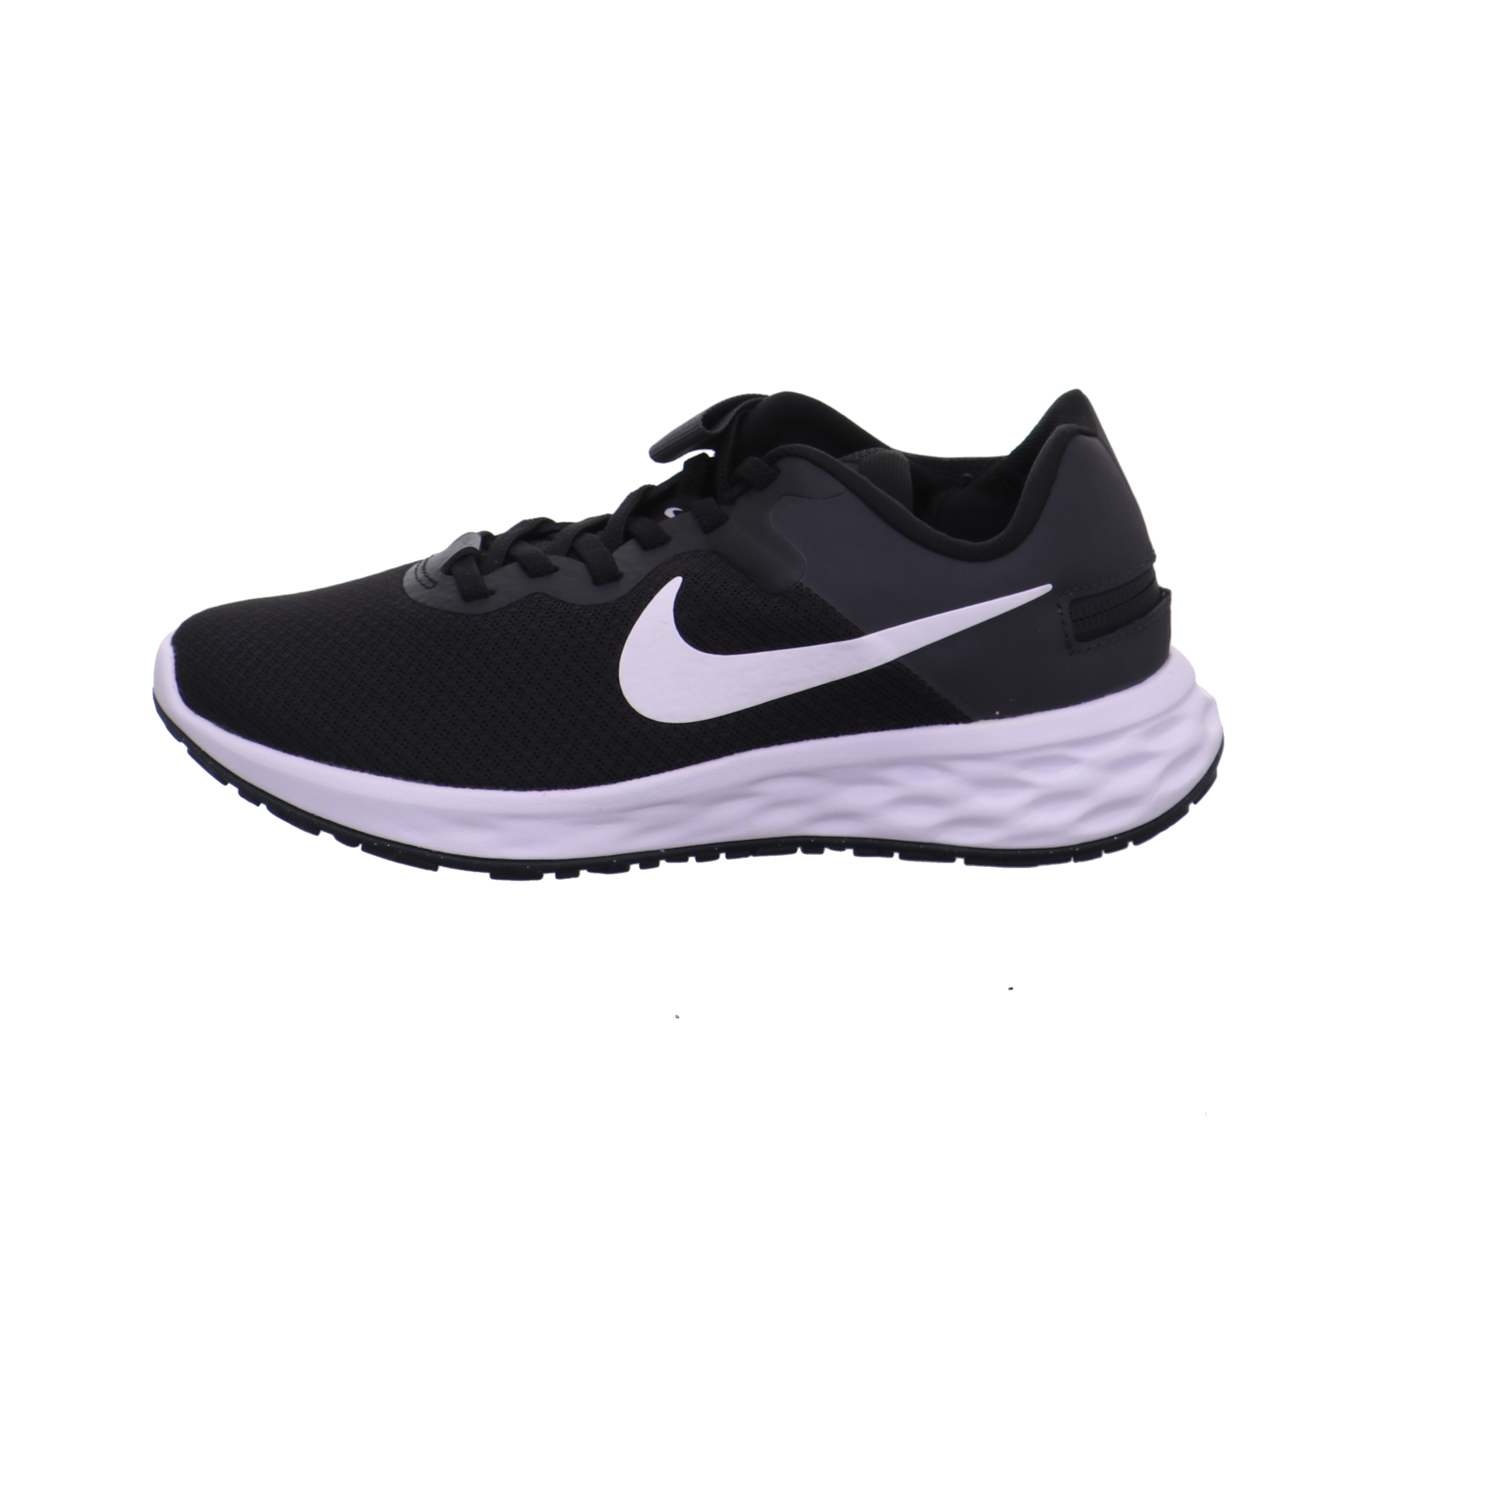 Nike Training und Hallenschuhe schwarz kombi Bild1